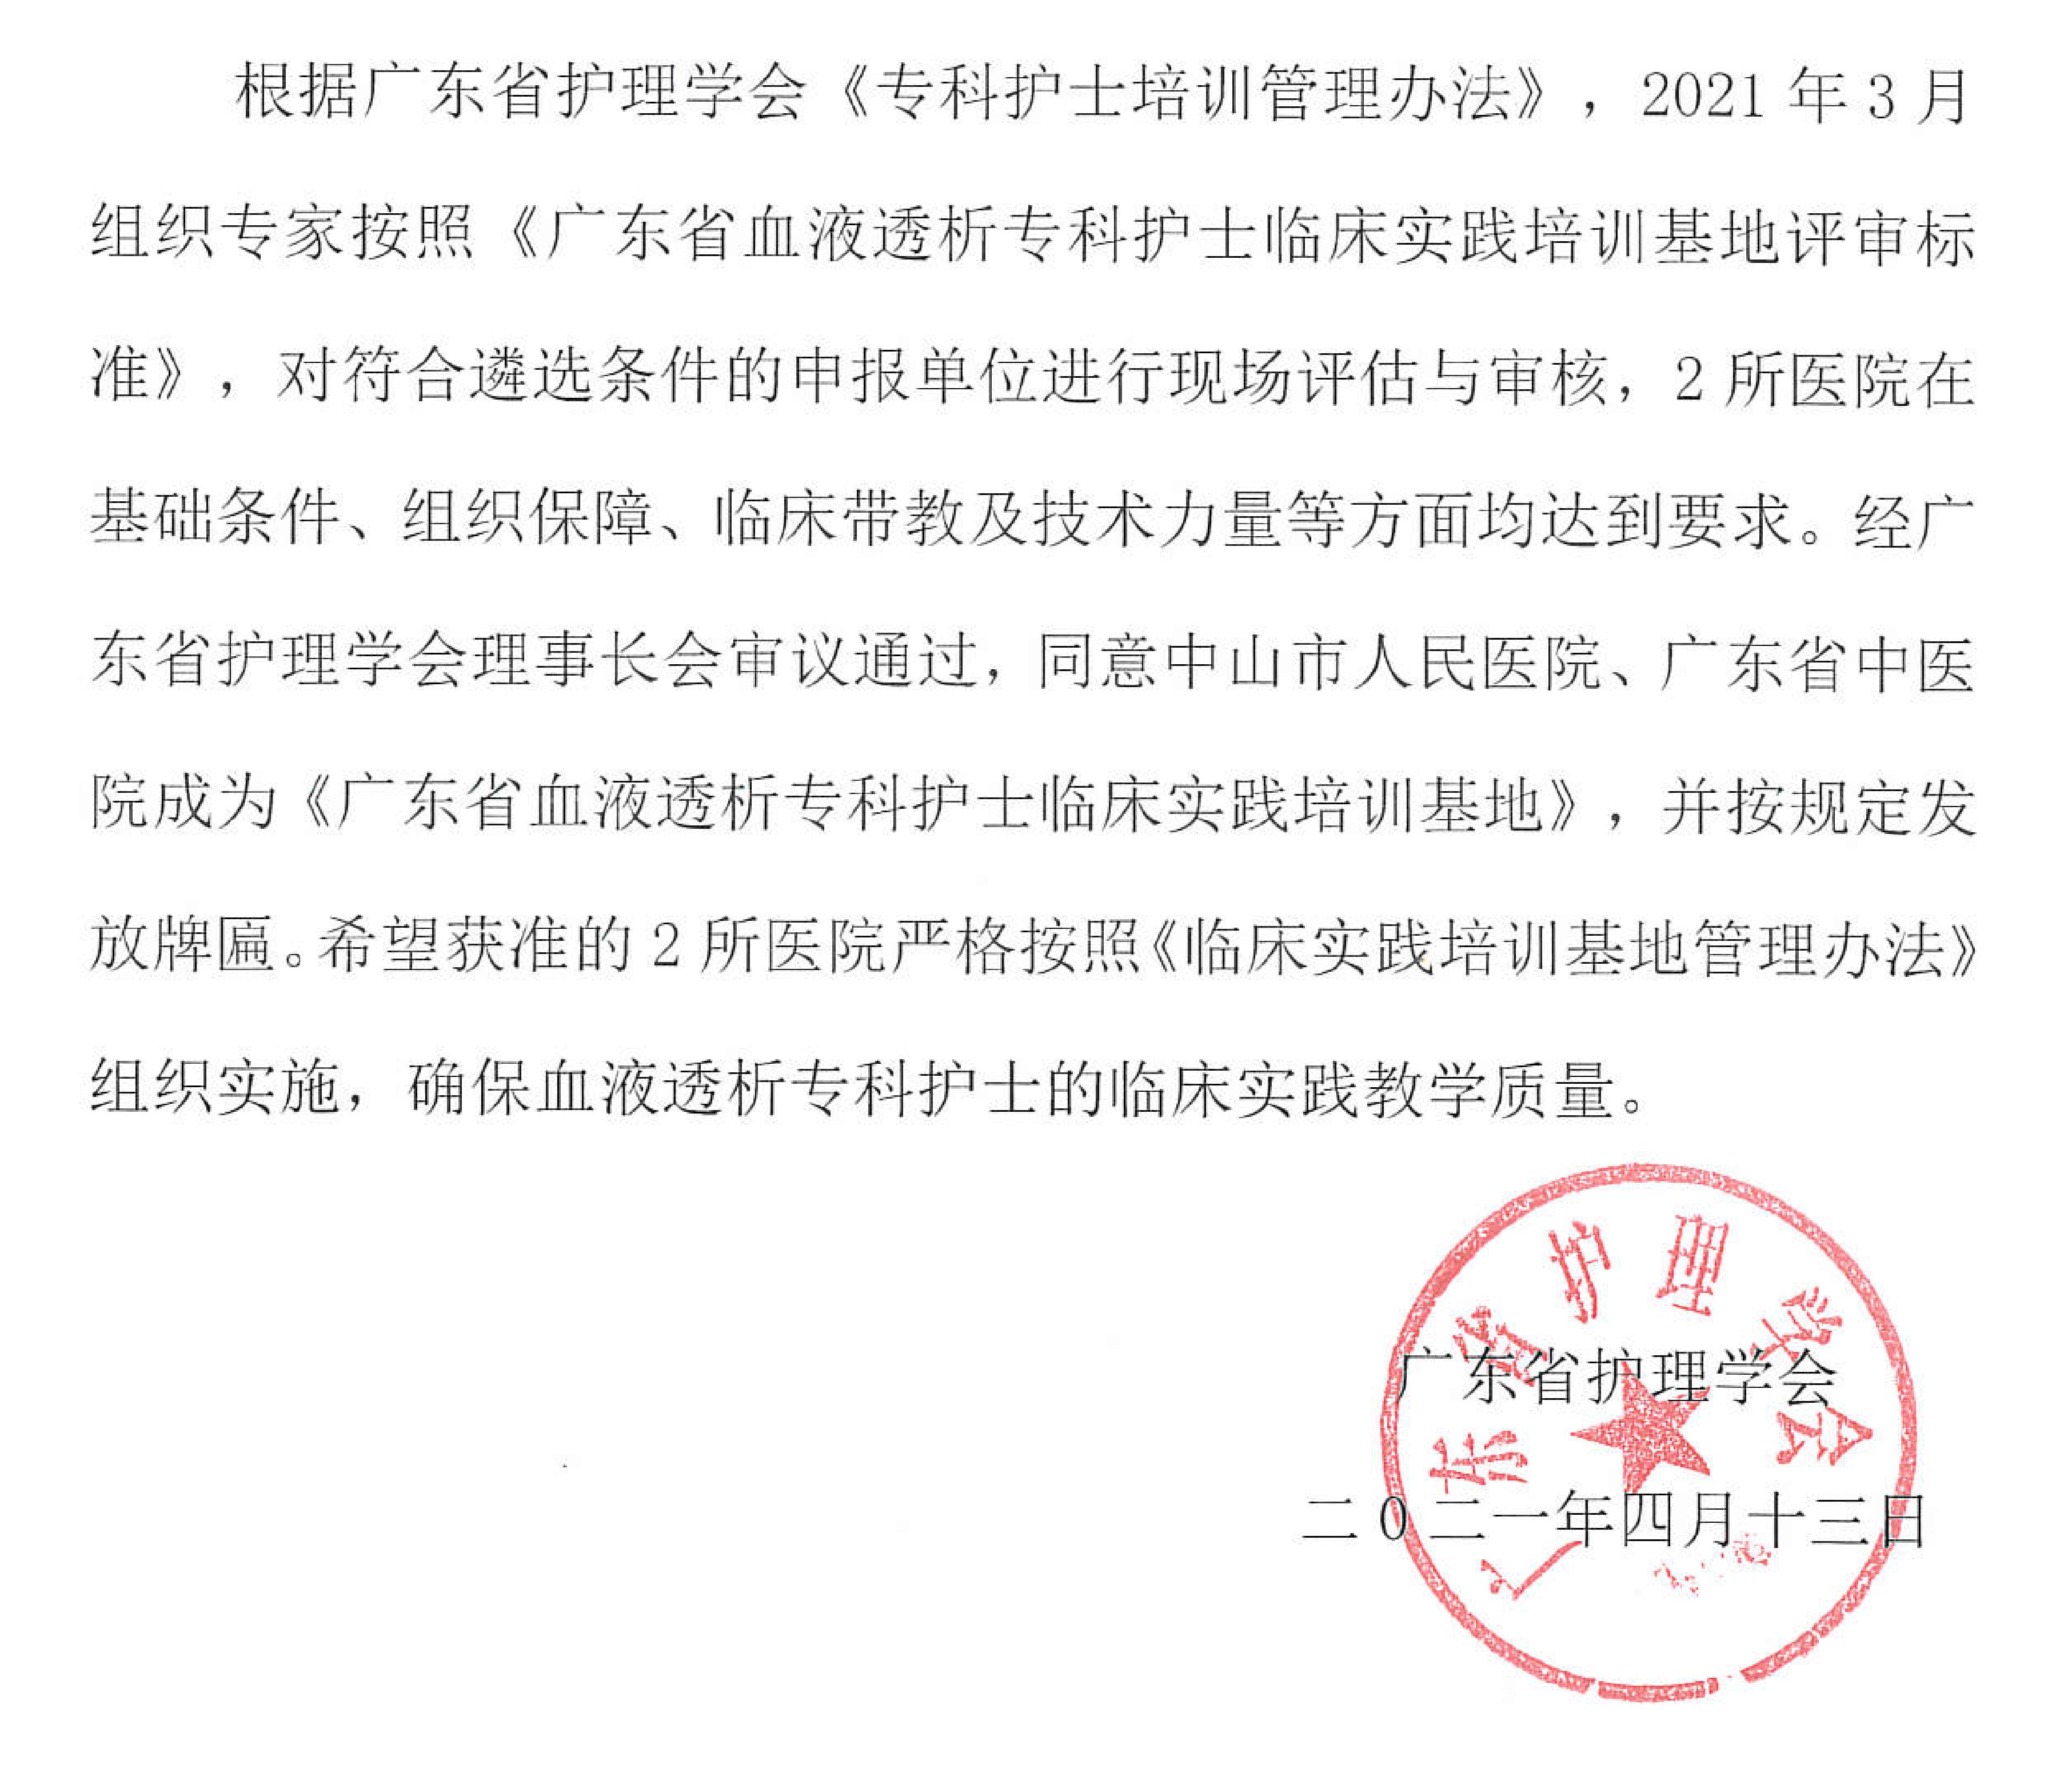 关于批准《广东省血液透析专科护士培训基地》的通告_00.jpg